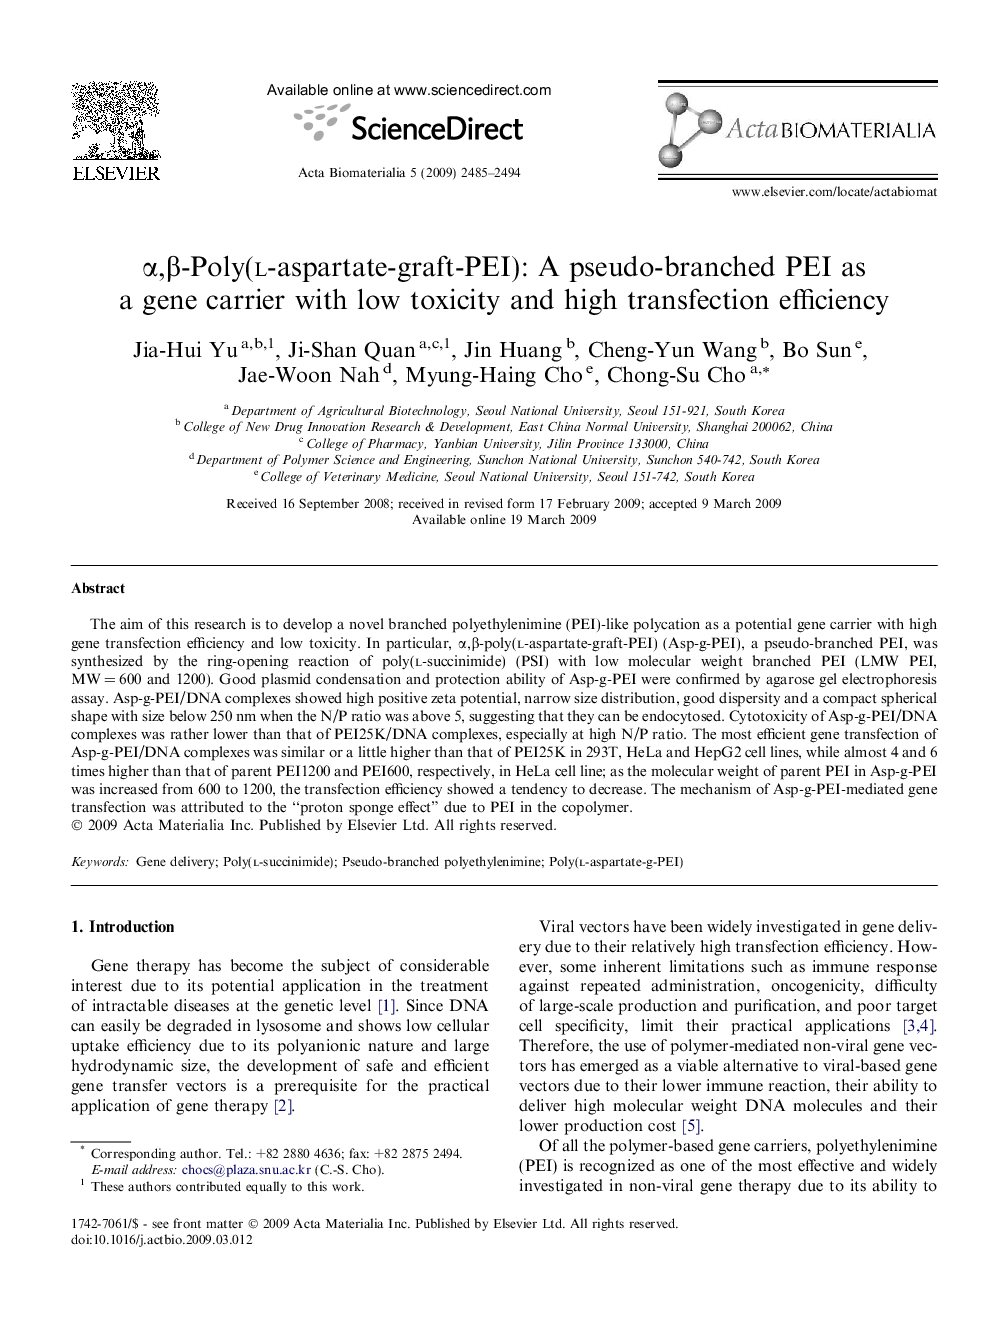 α,β-Poly(l-aspartate-graft-PEI): A pseudo-branched PEI as a gene carrier with low toxicity and high transfection efficiency